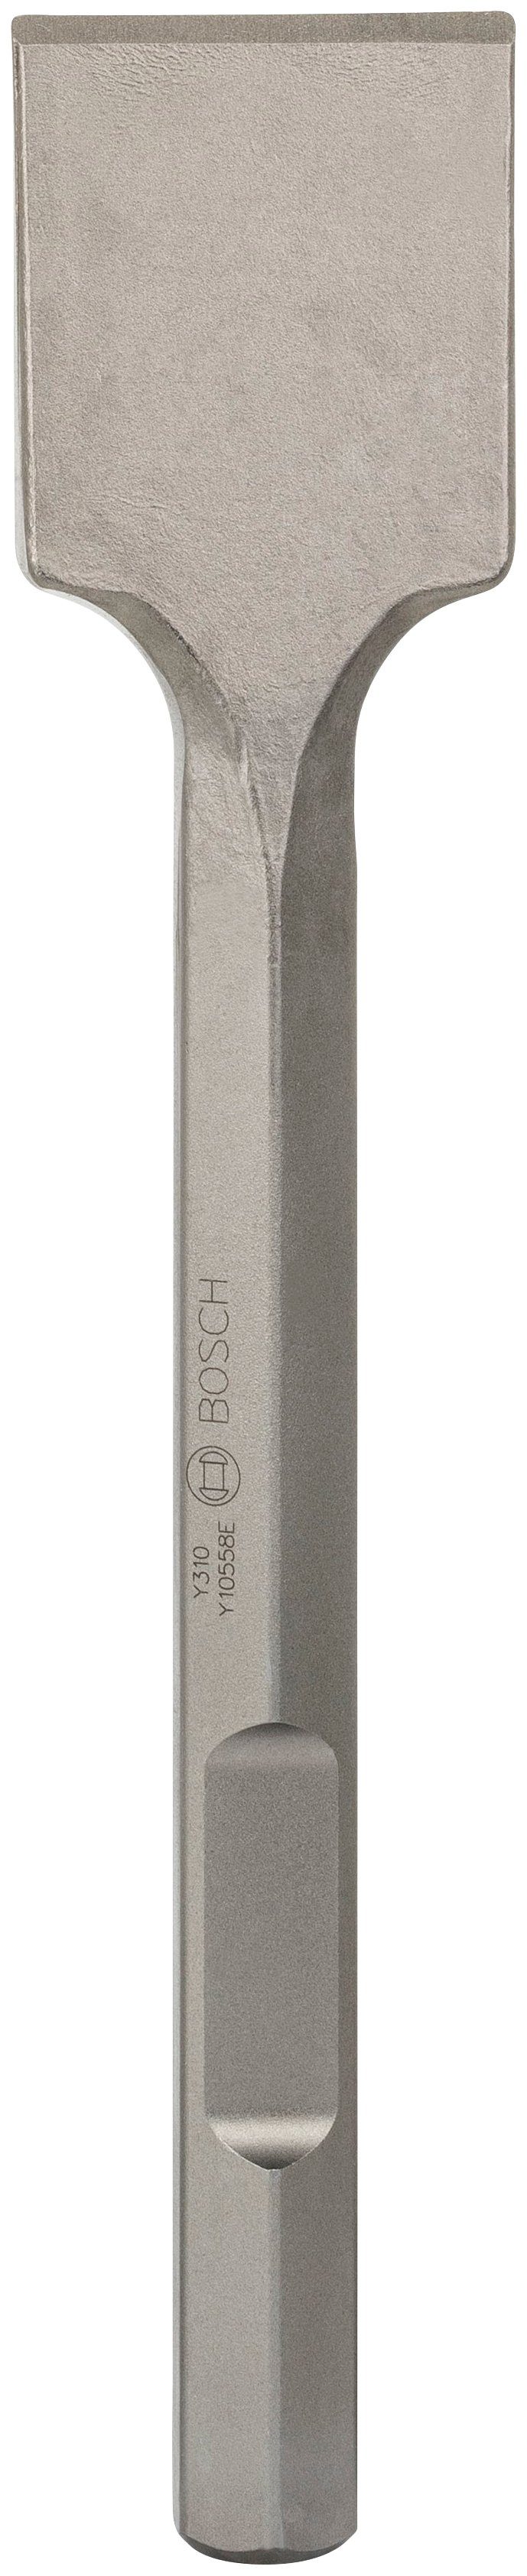 Bosch x 80 41 Spatmeißel, Professional 28-mm-Sechskantaufnahme in mm, 400 mm